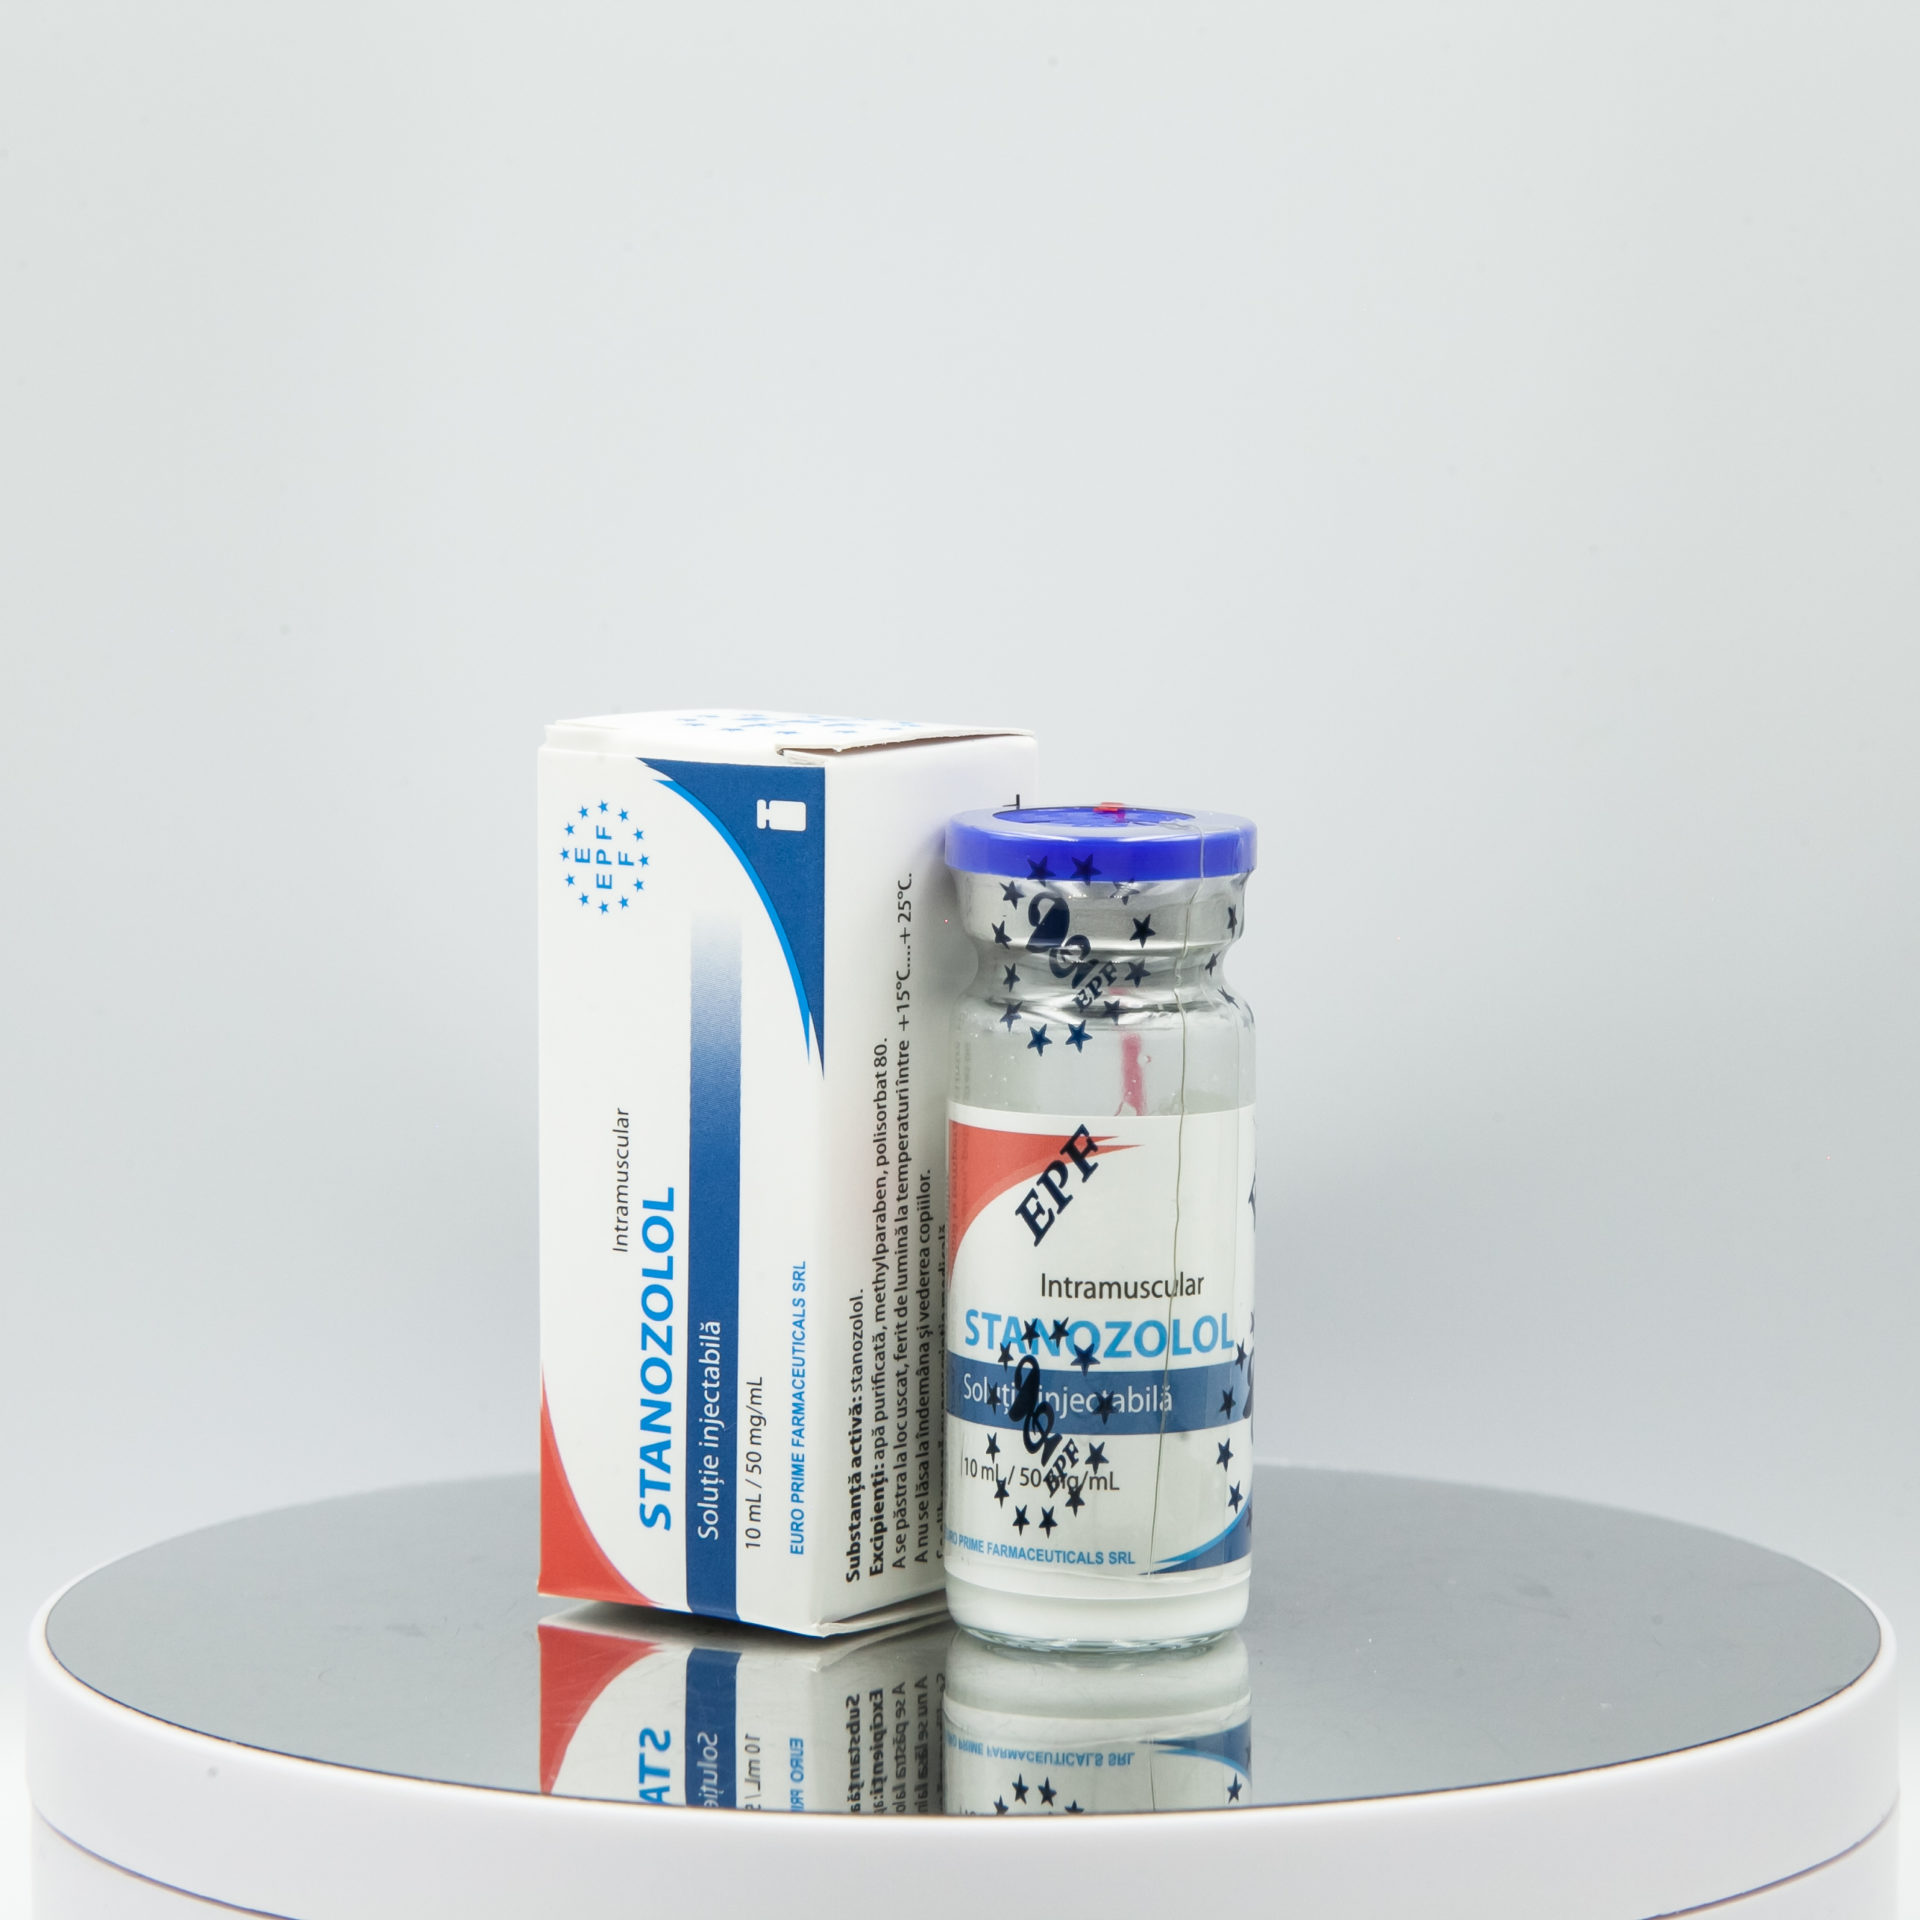 Winstrol (Stanozolol) 100 mg Euro Prime Farmaceuticals Iniezione di steroidi